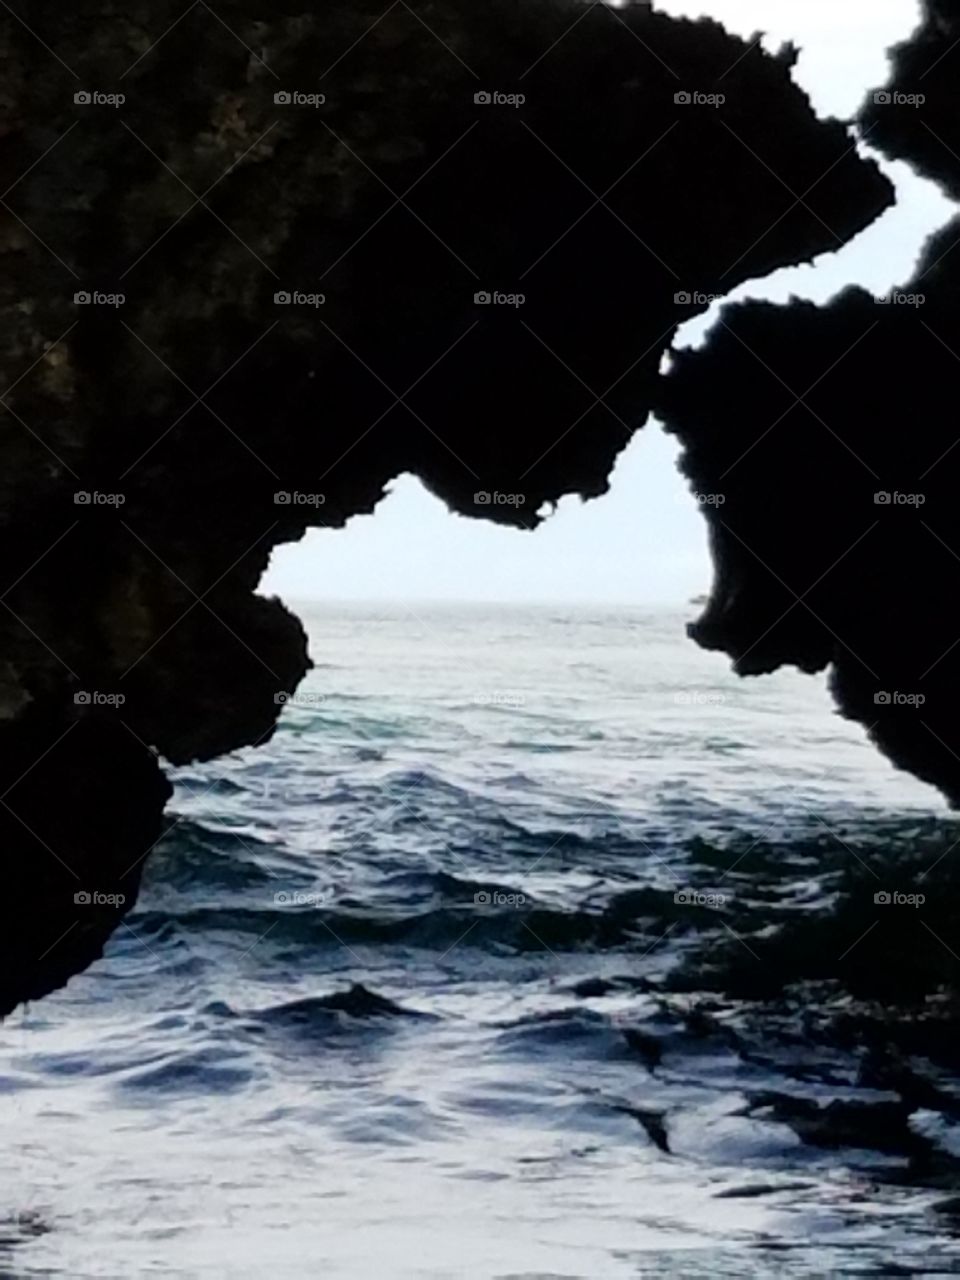 'SEA CAVE'
MARIETTAS ISLANDS
JALISCO, MEXICO